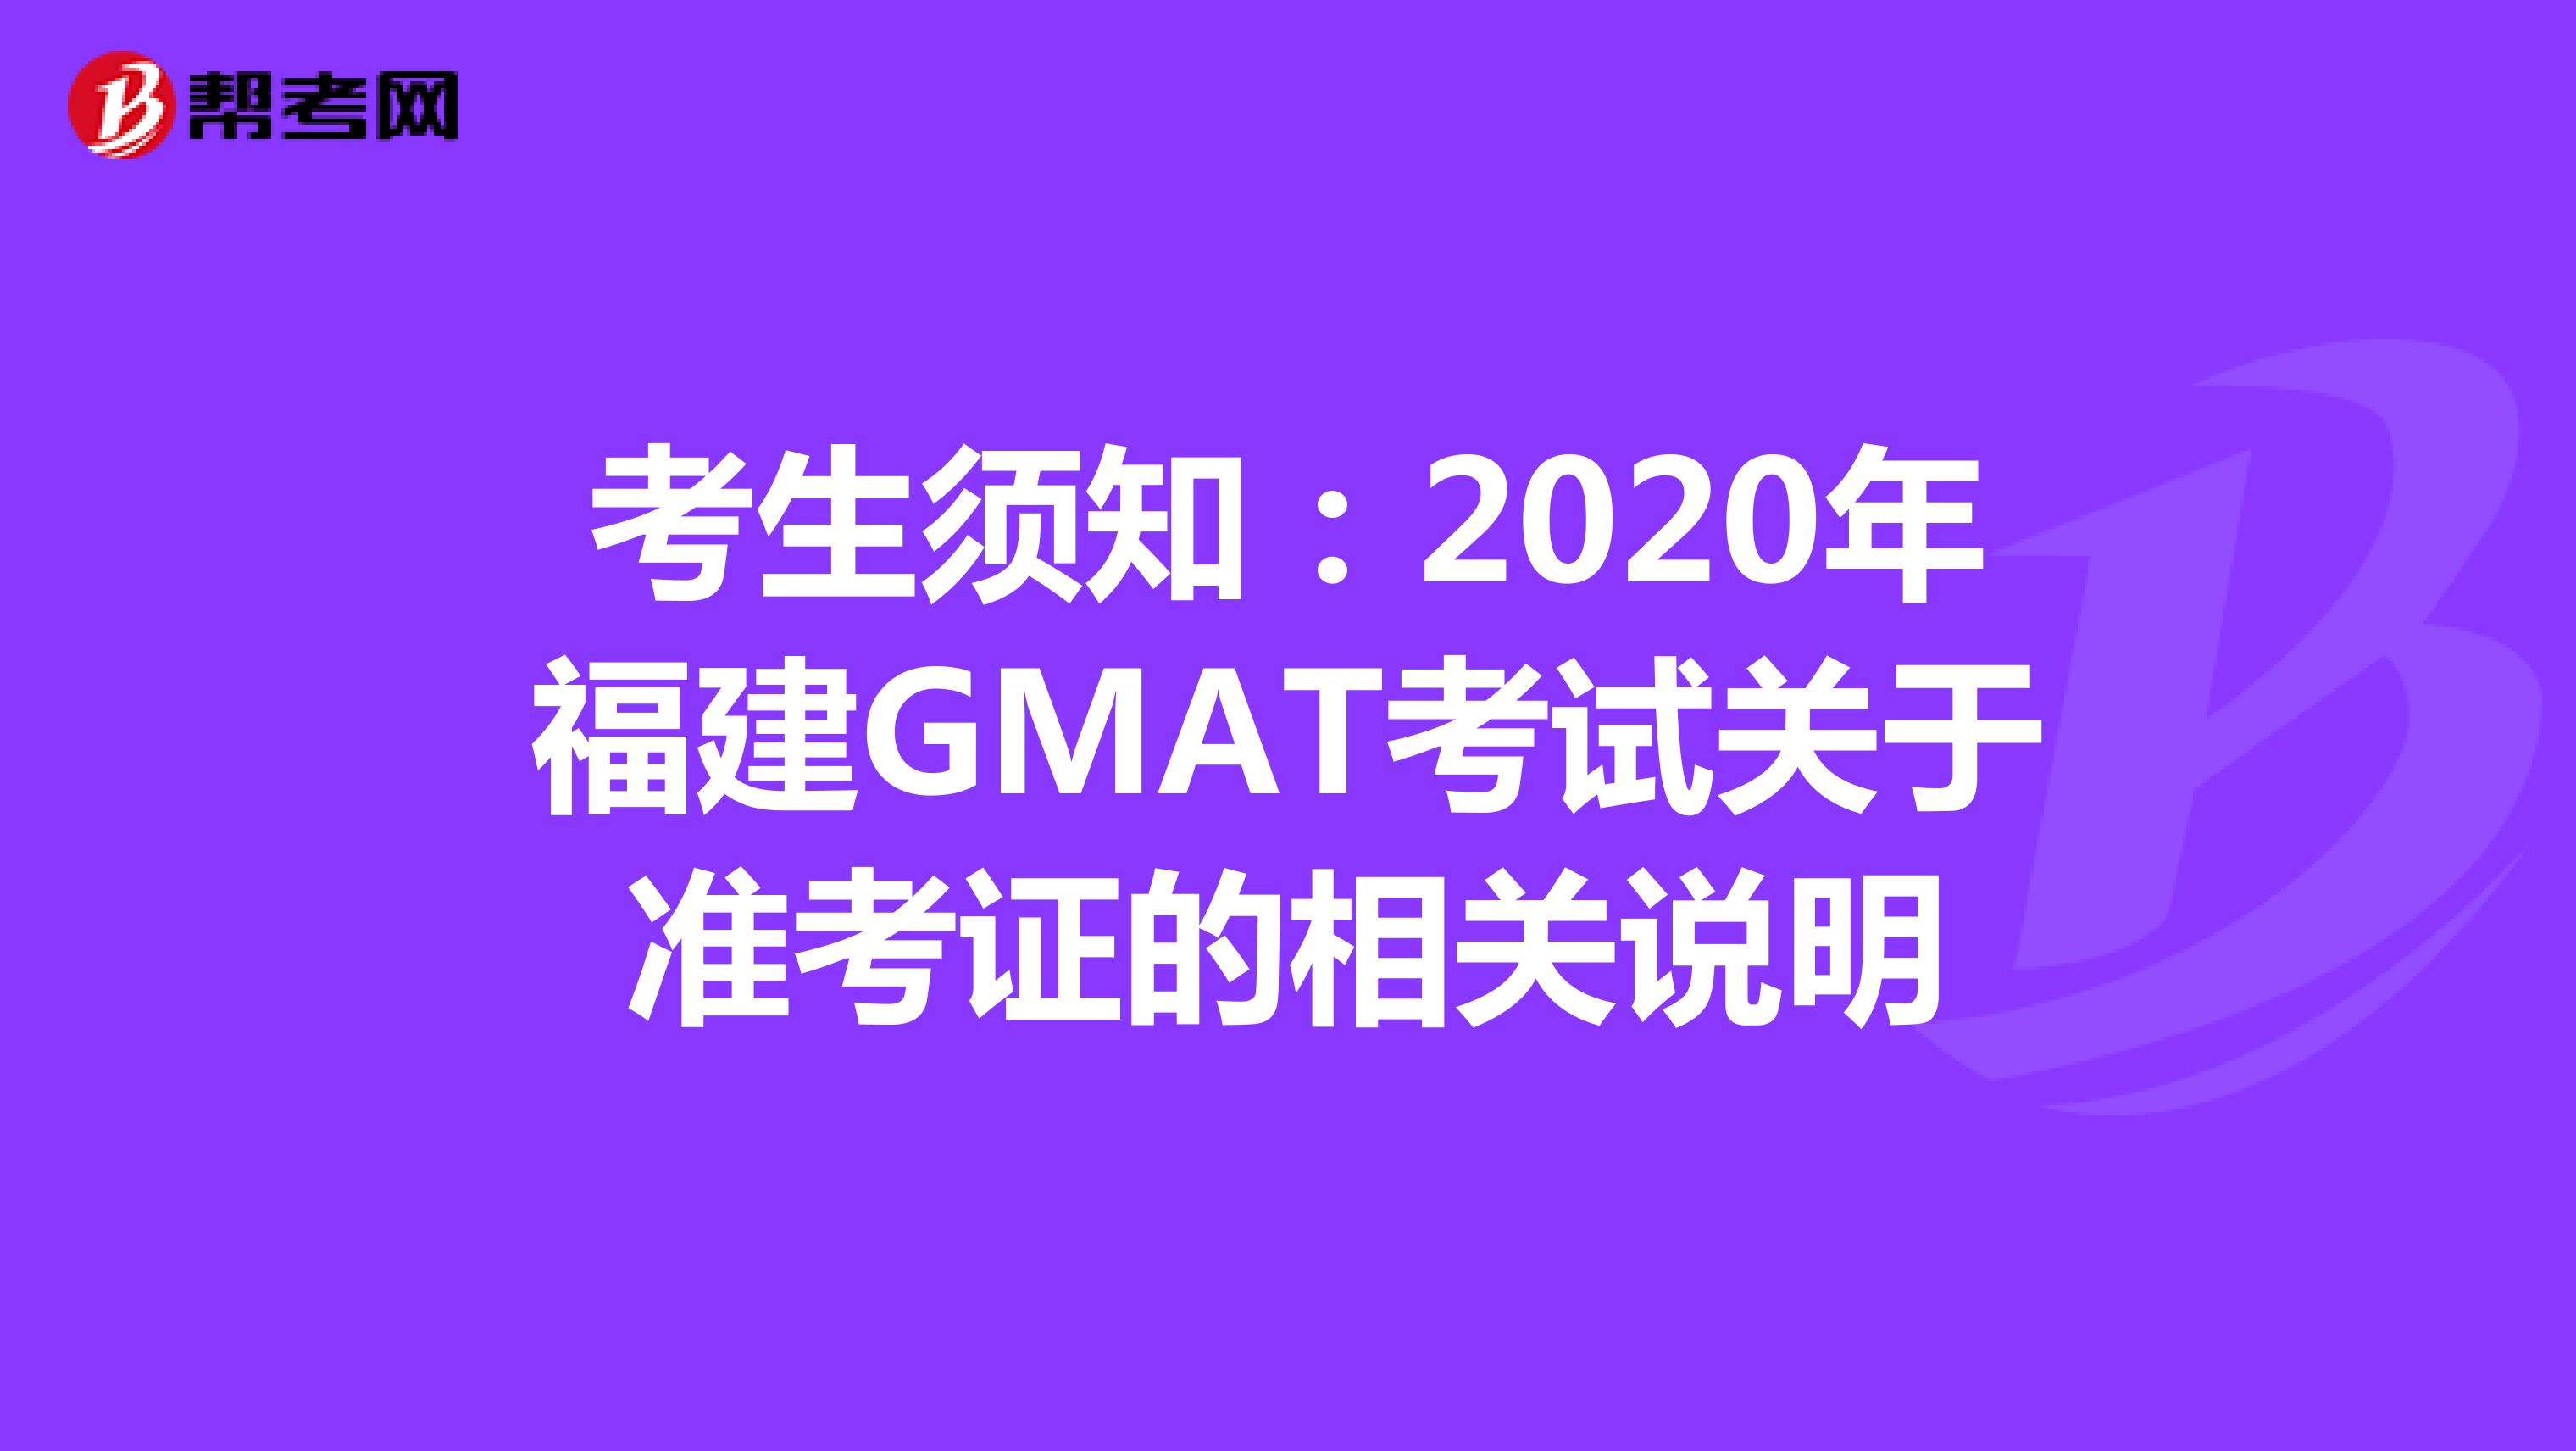 考生须知：2020年福建GMAT考试关于准考证的相关说明